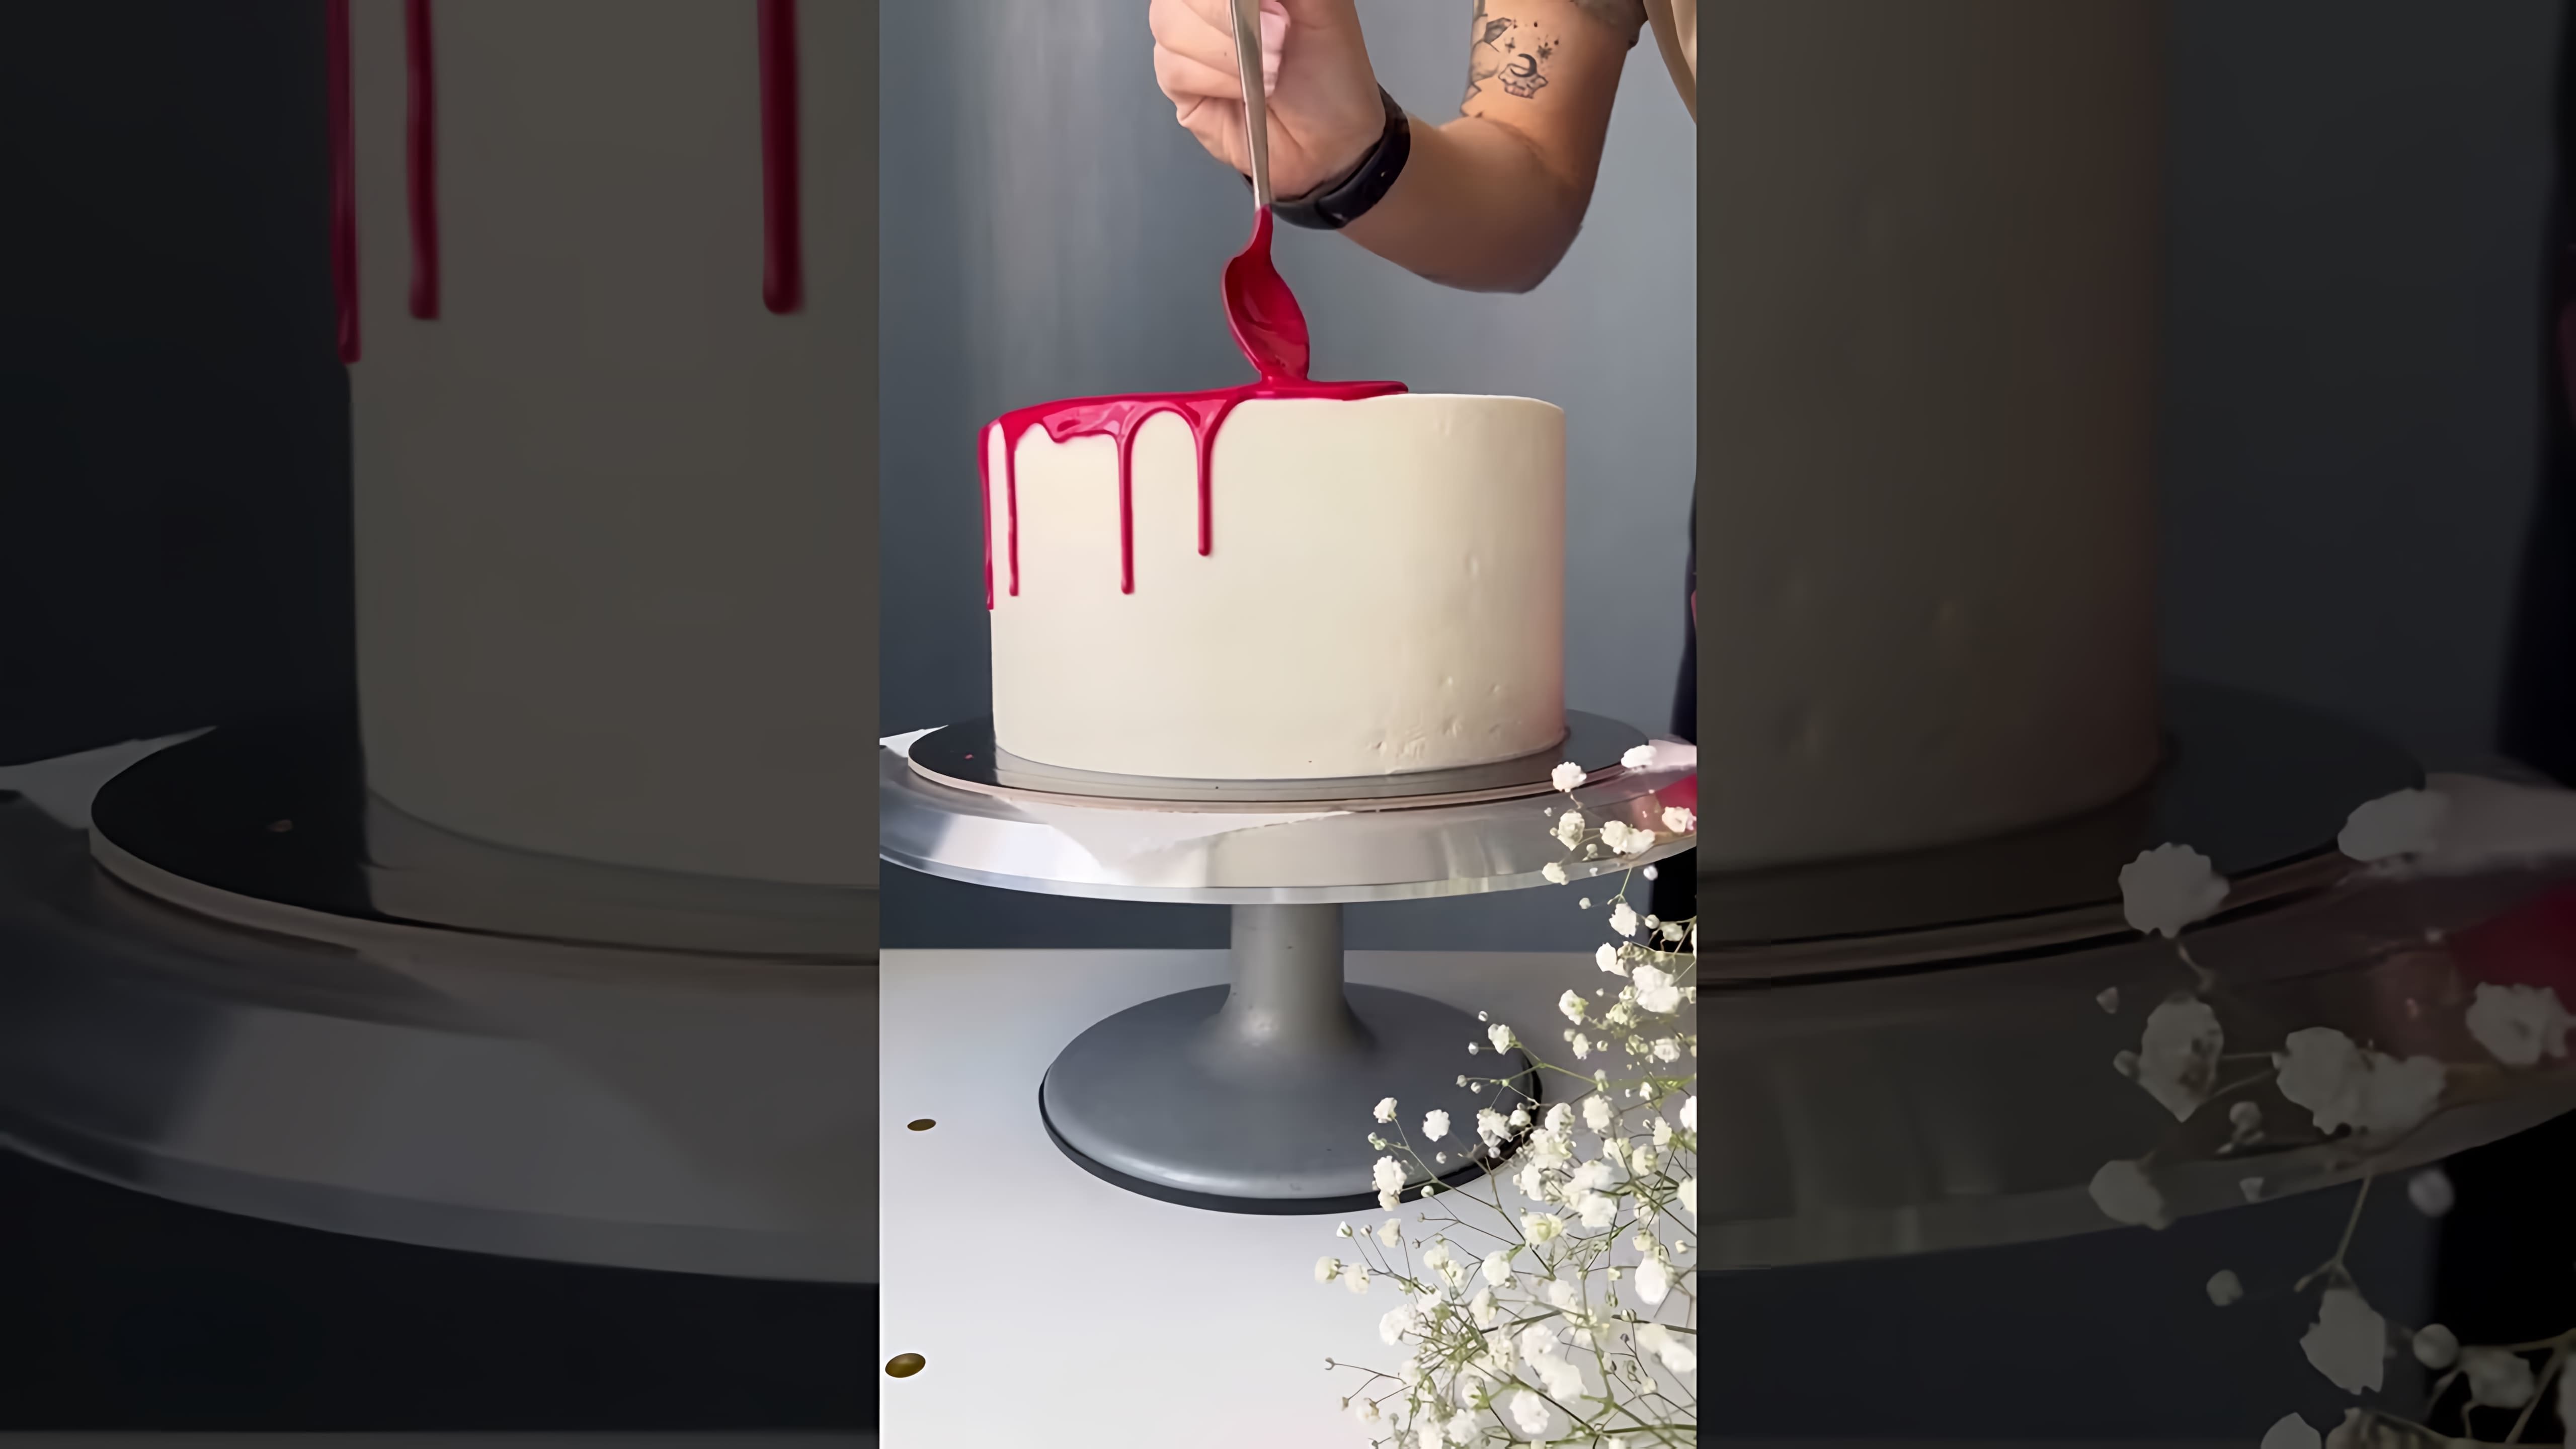 В этом видео демонстрируется рецепт создания красных подтеков на торте